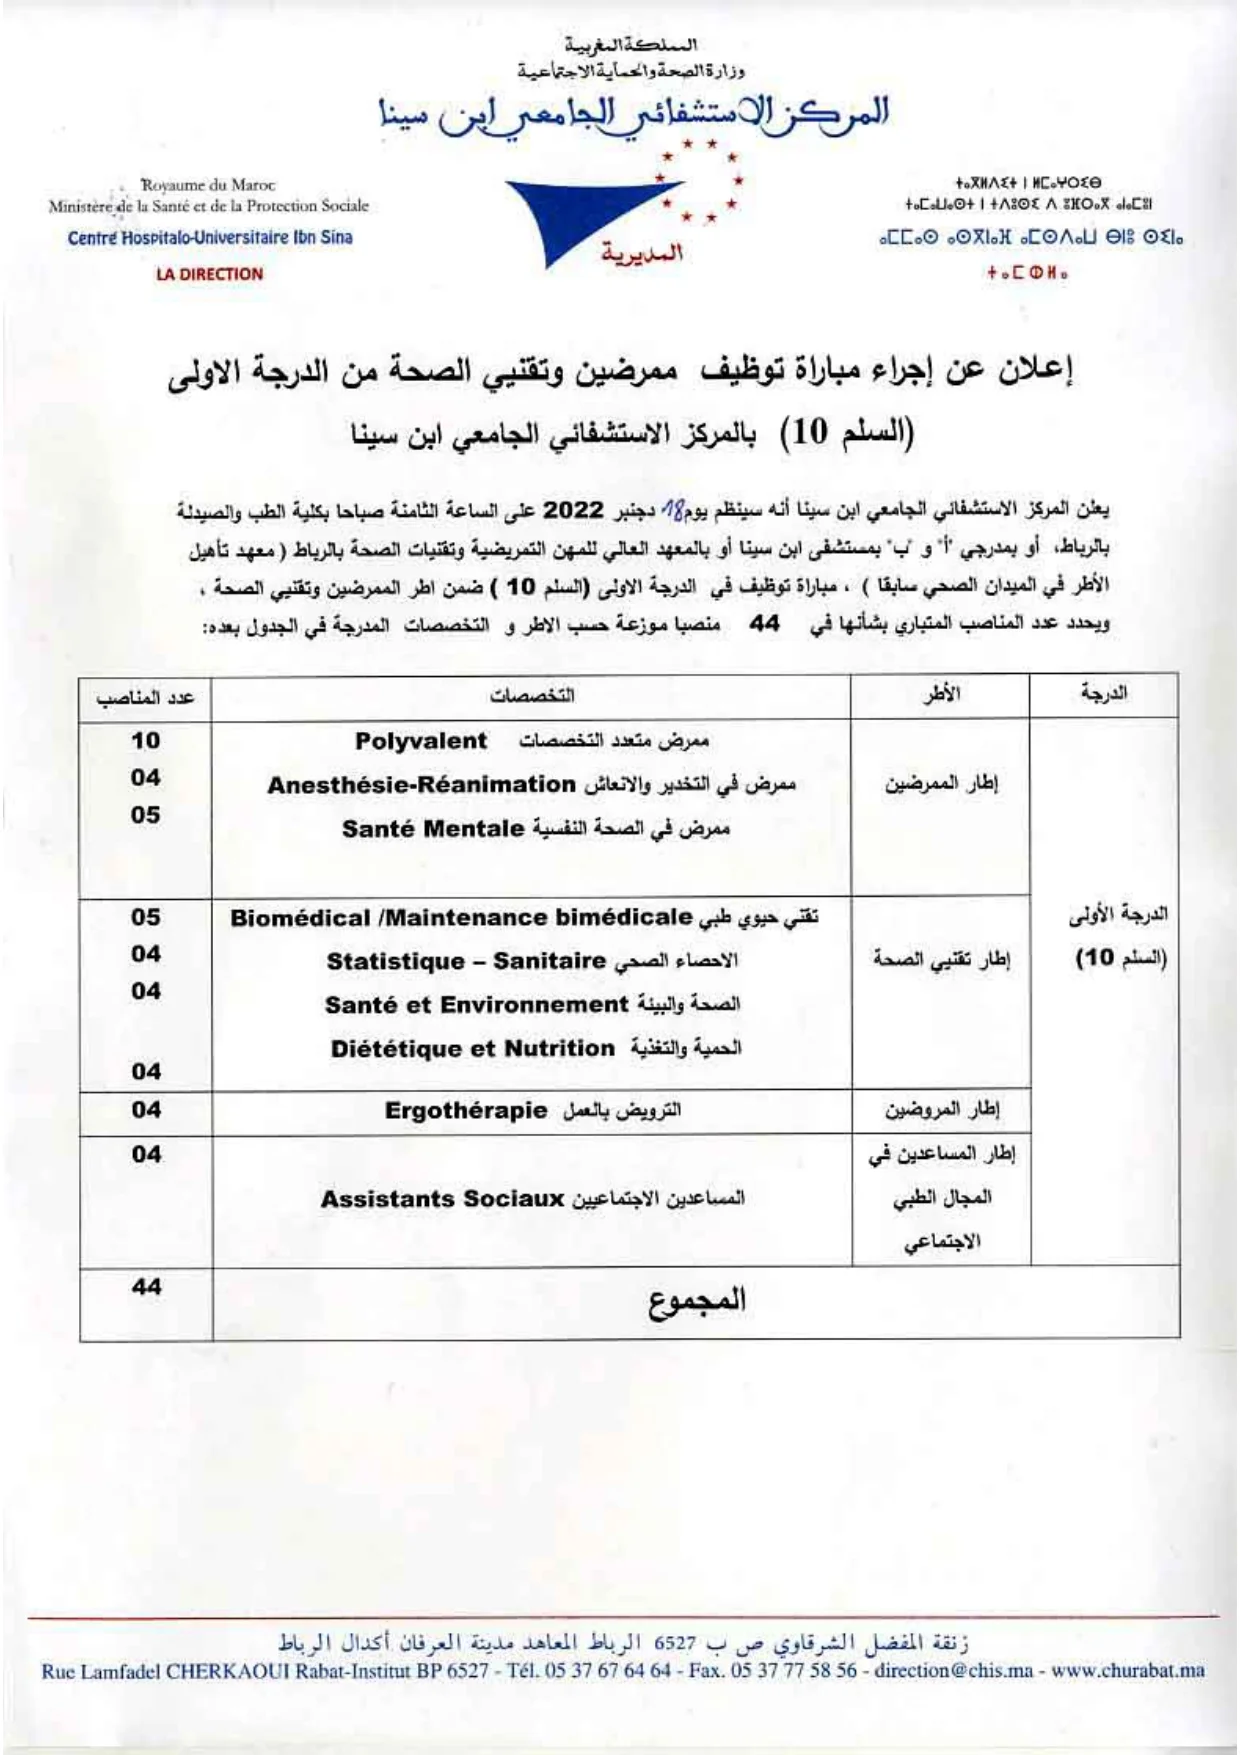 Concours de recrutement CHU Ibn Sina 2022